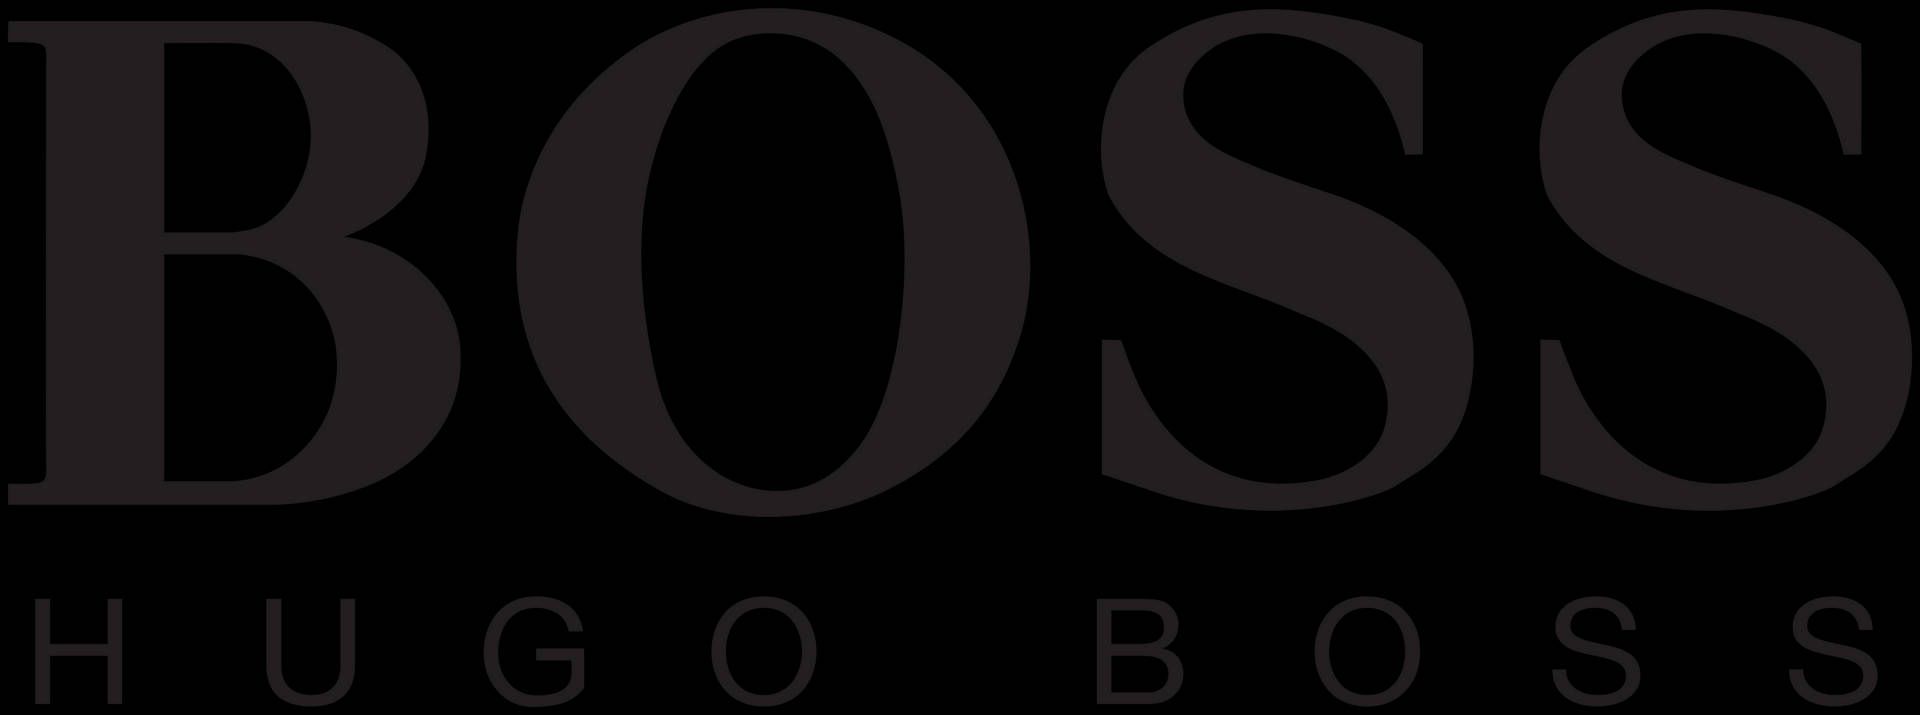  Hugo Boss Hintergrundbild 1920x715. Download Hugo Boss Logo Wallpaper